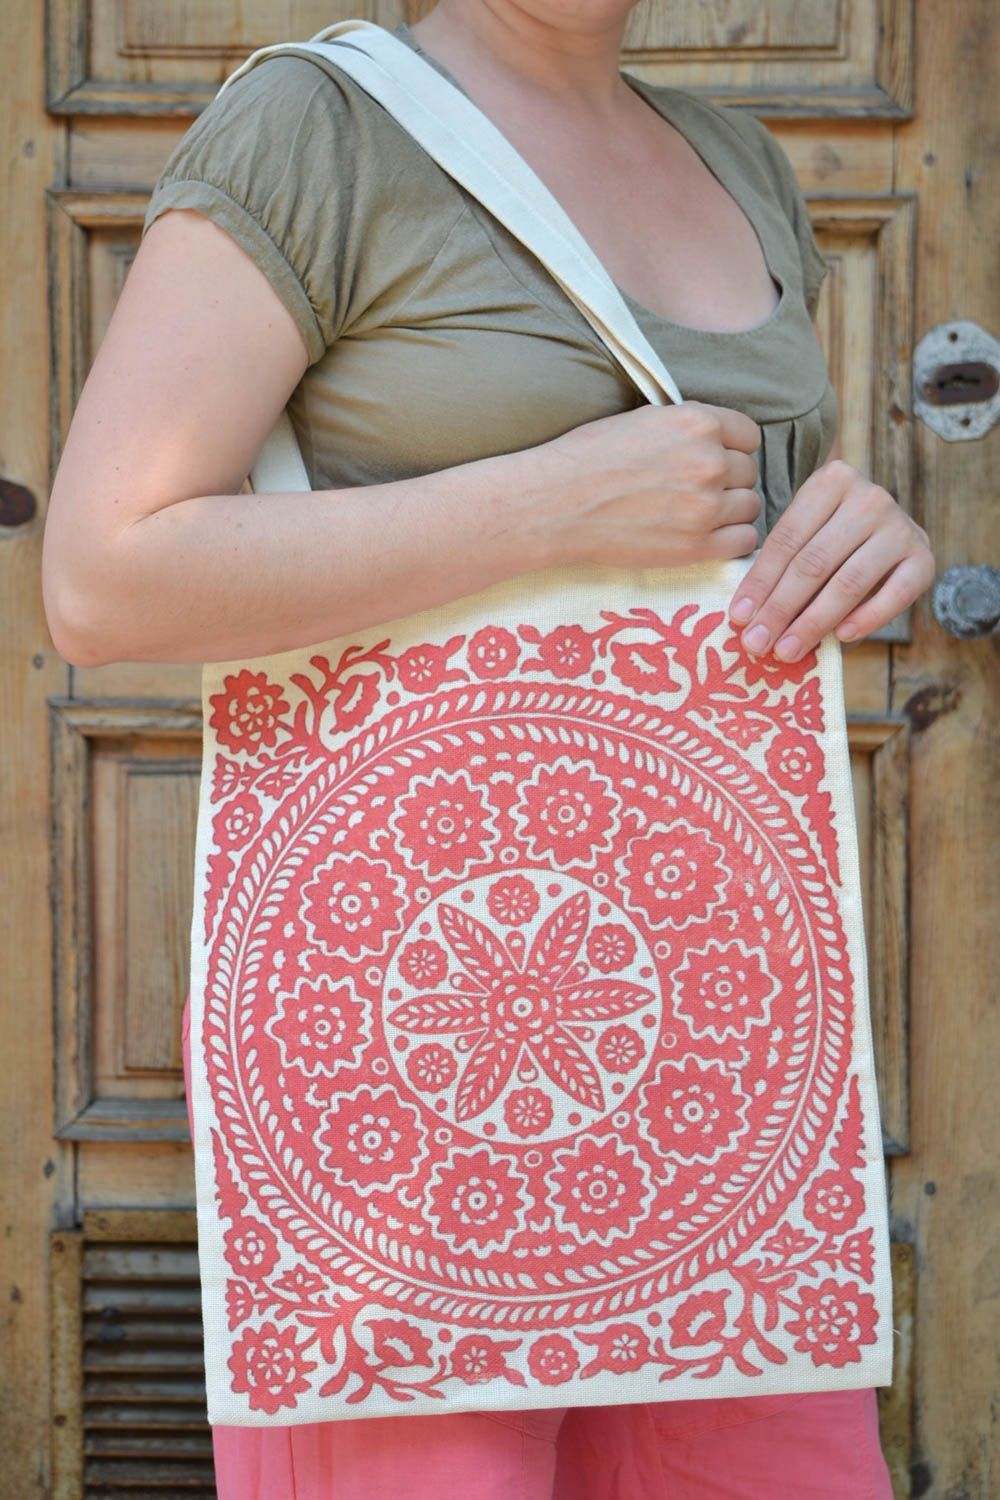 Текстильная сумка с орнаментом эко аксессуар ручной работы принтованная красная фото 1